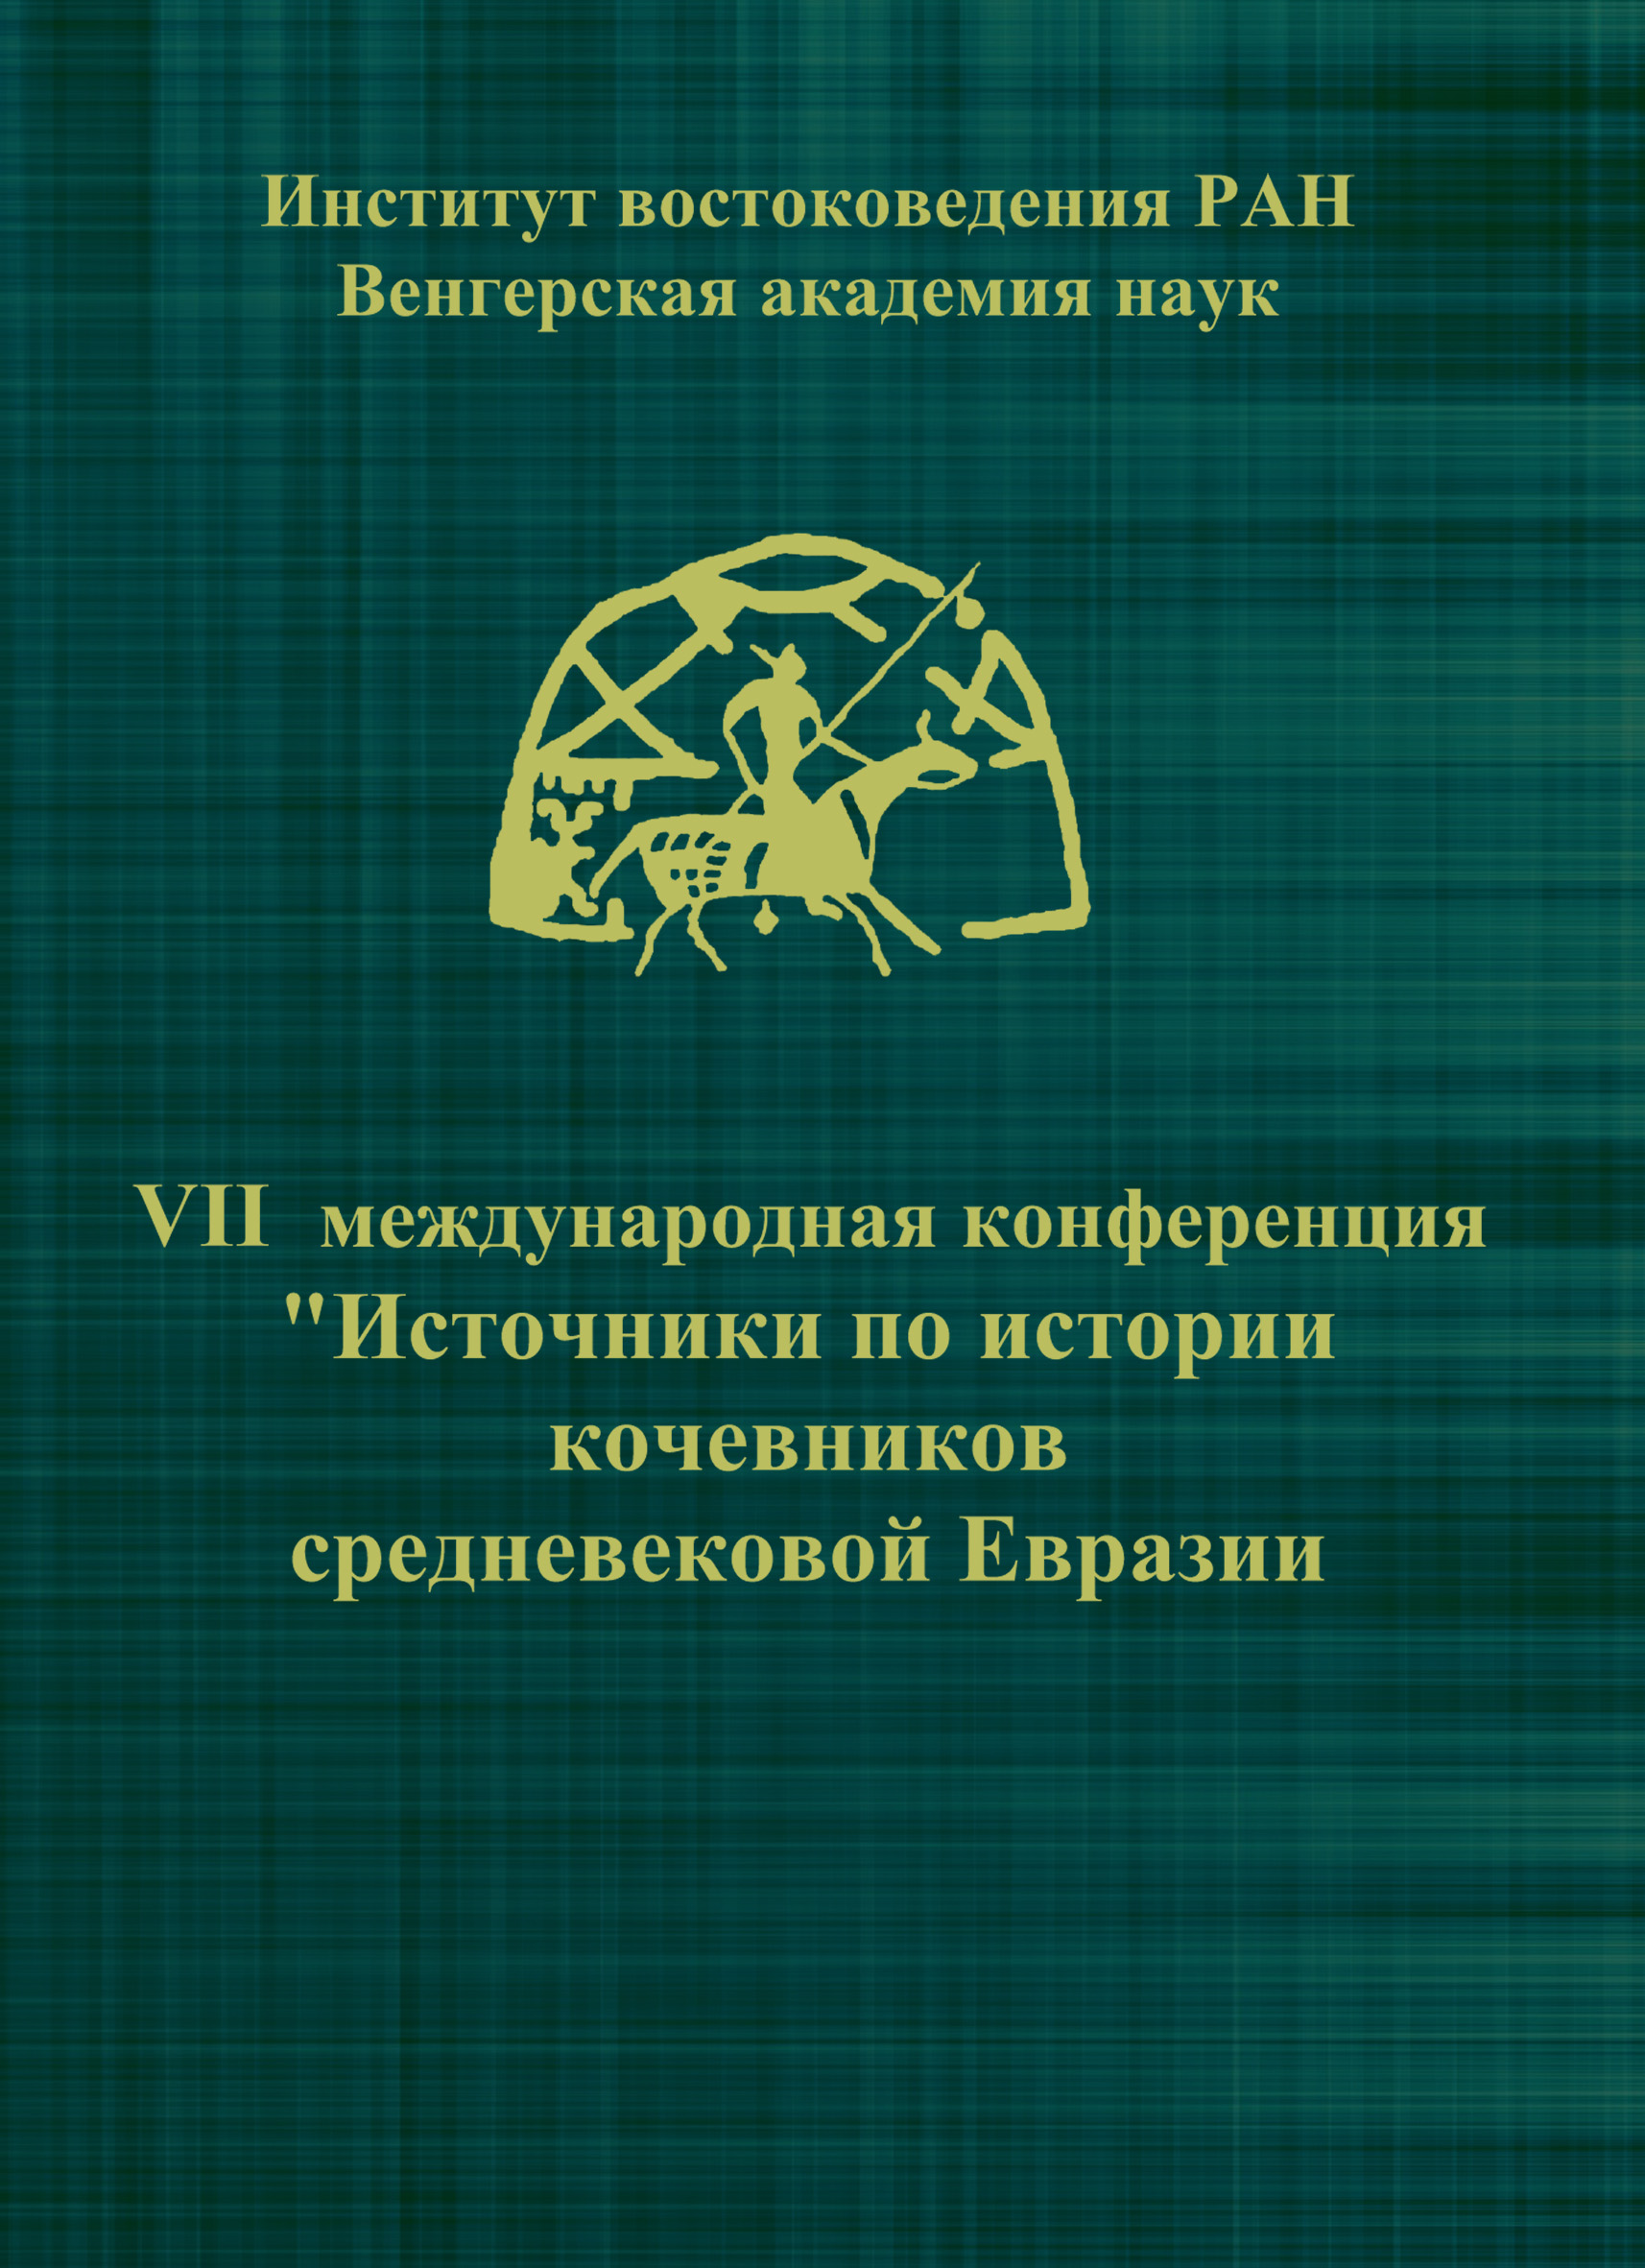 VIIМеждународная конференция «Источники по истории кочевников средневековой Евразии»